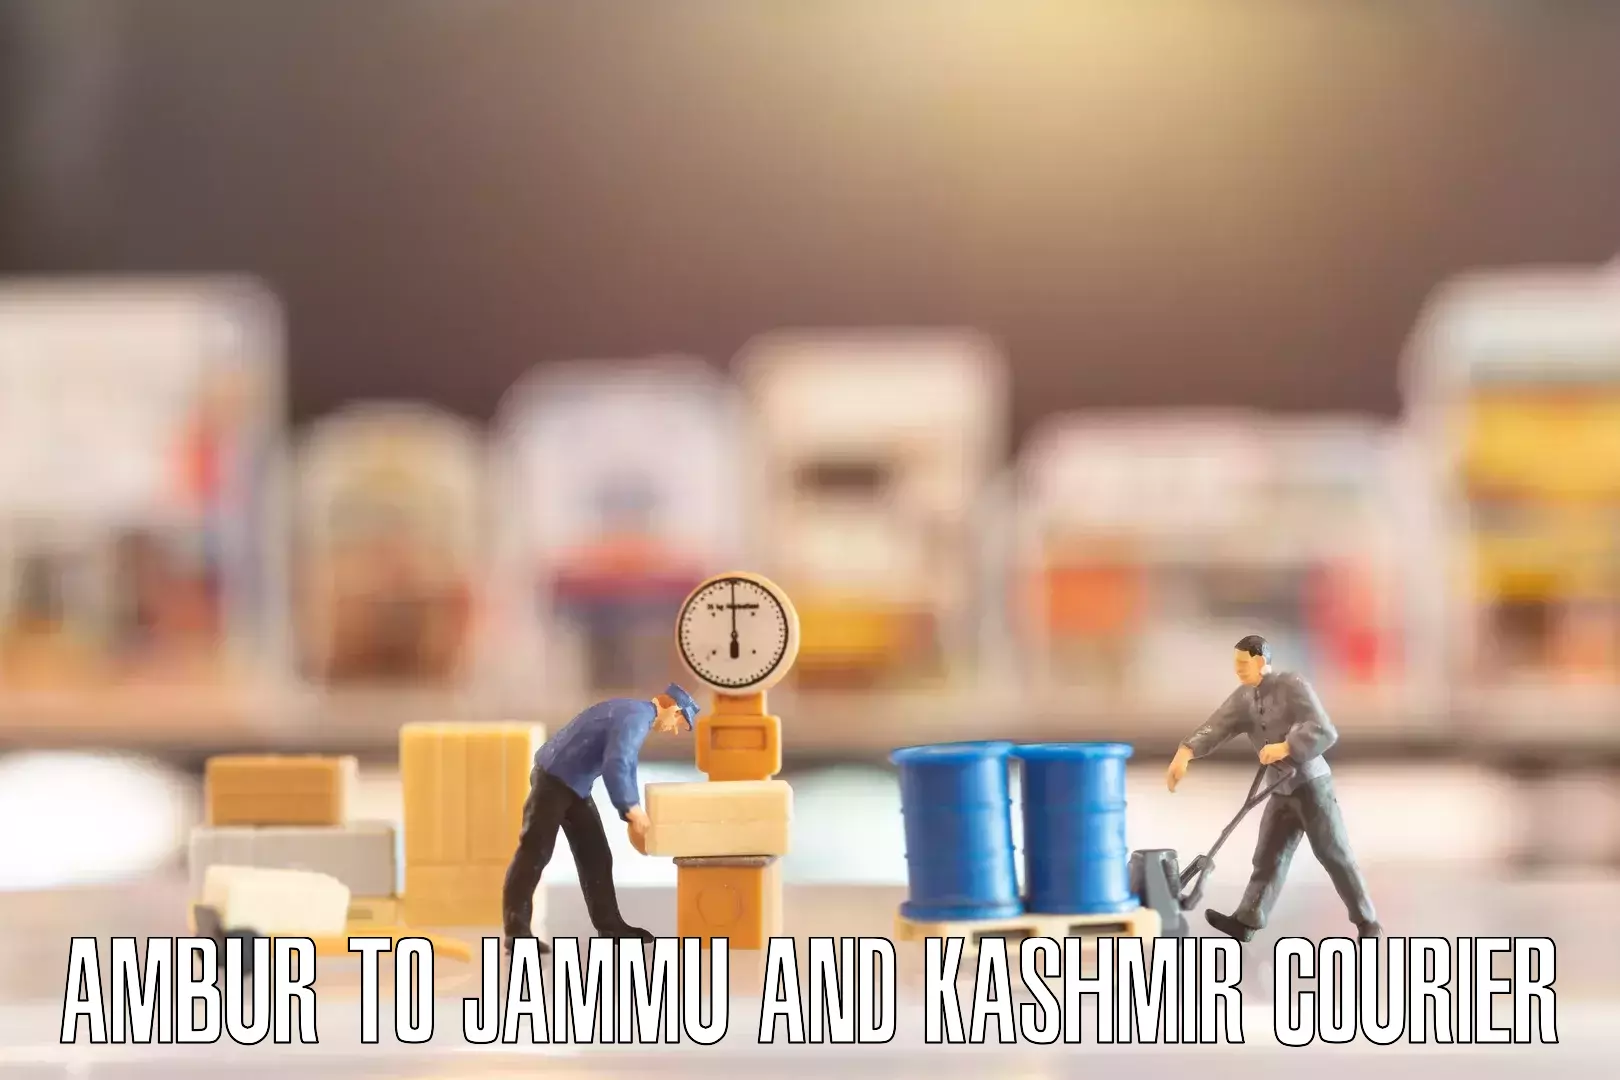 Furniture transport specialists Ambur to Jammu